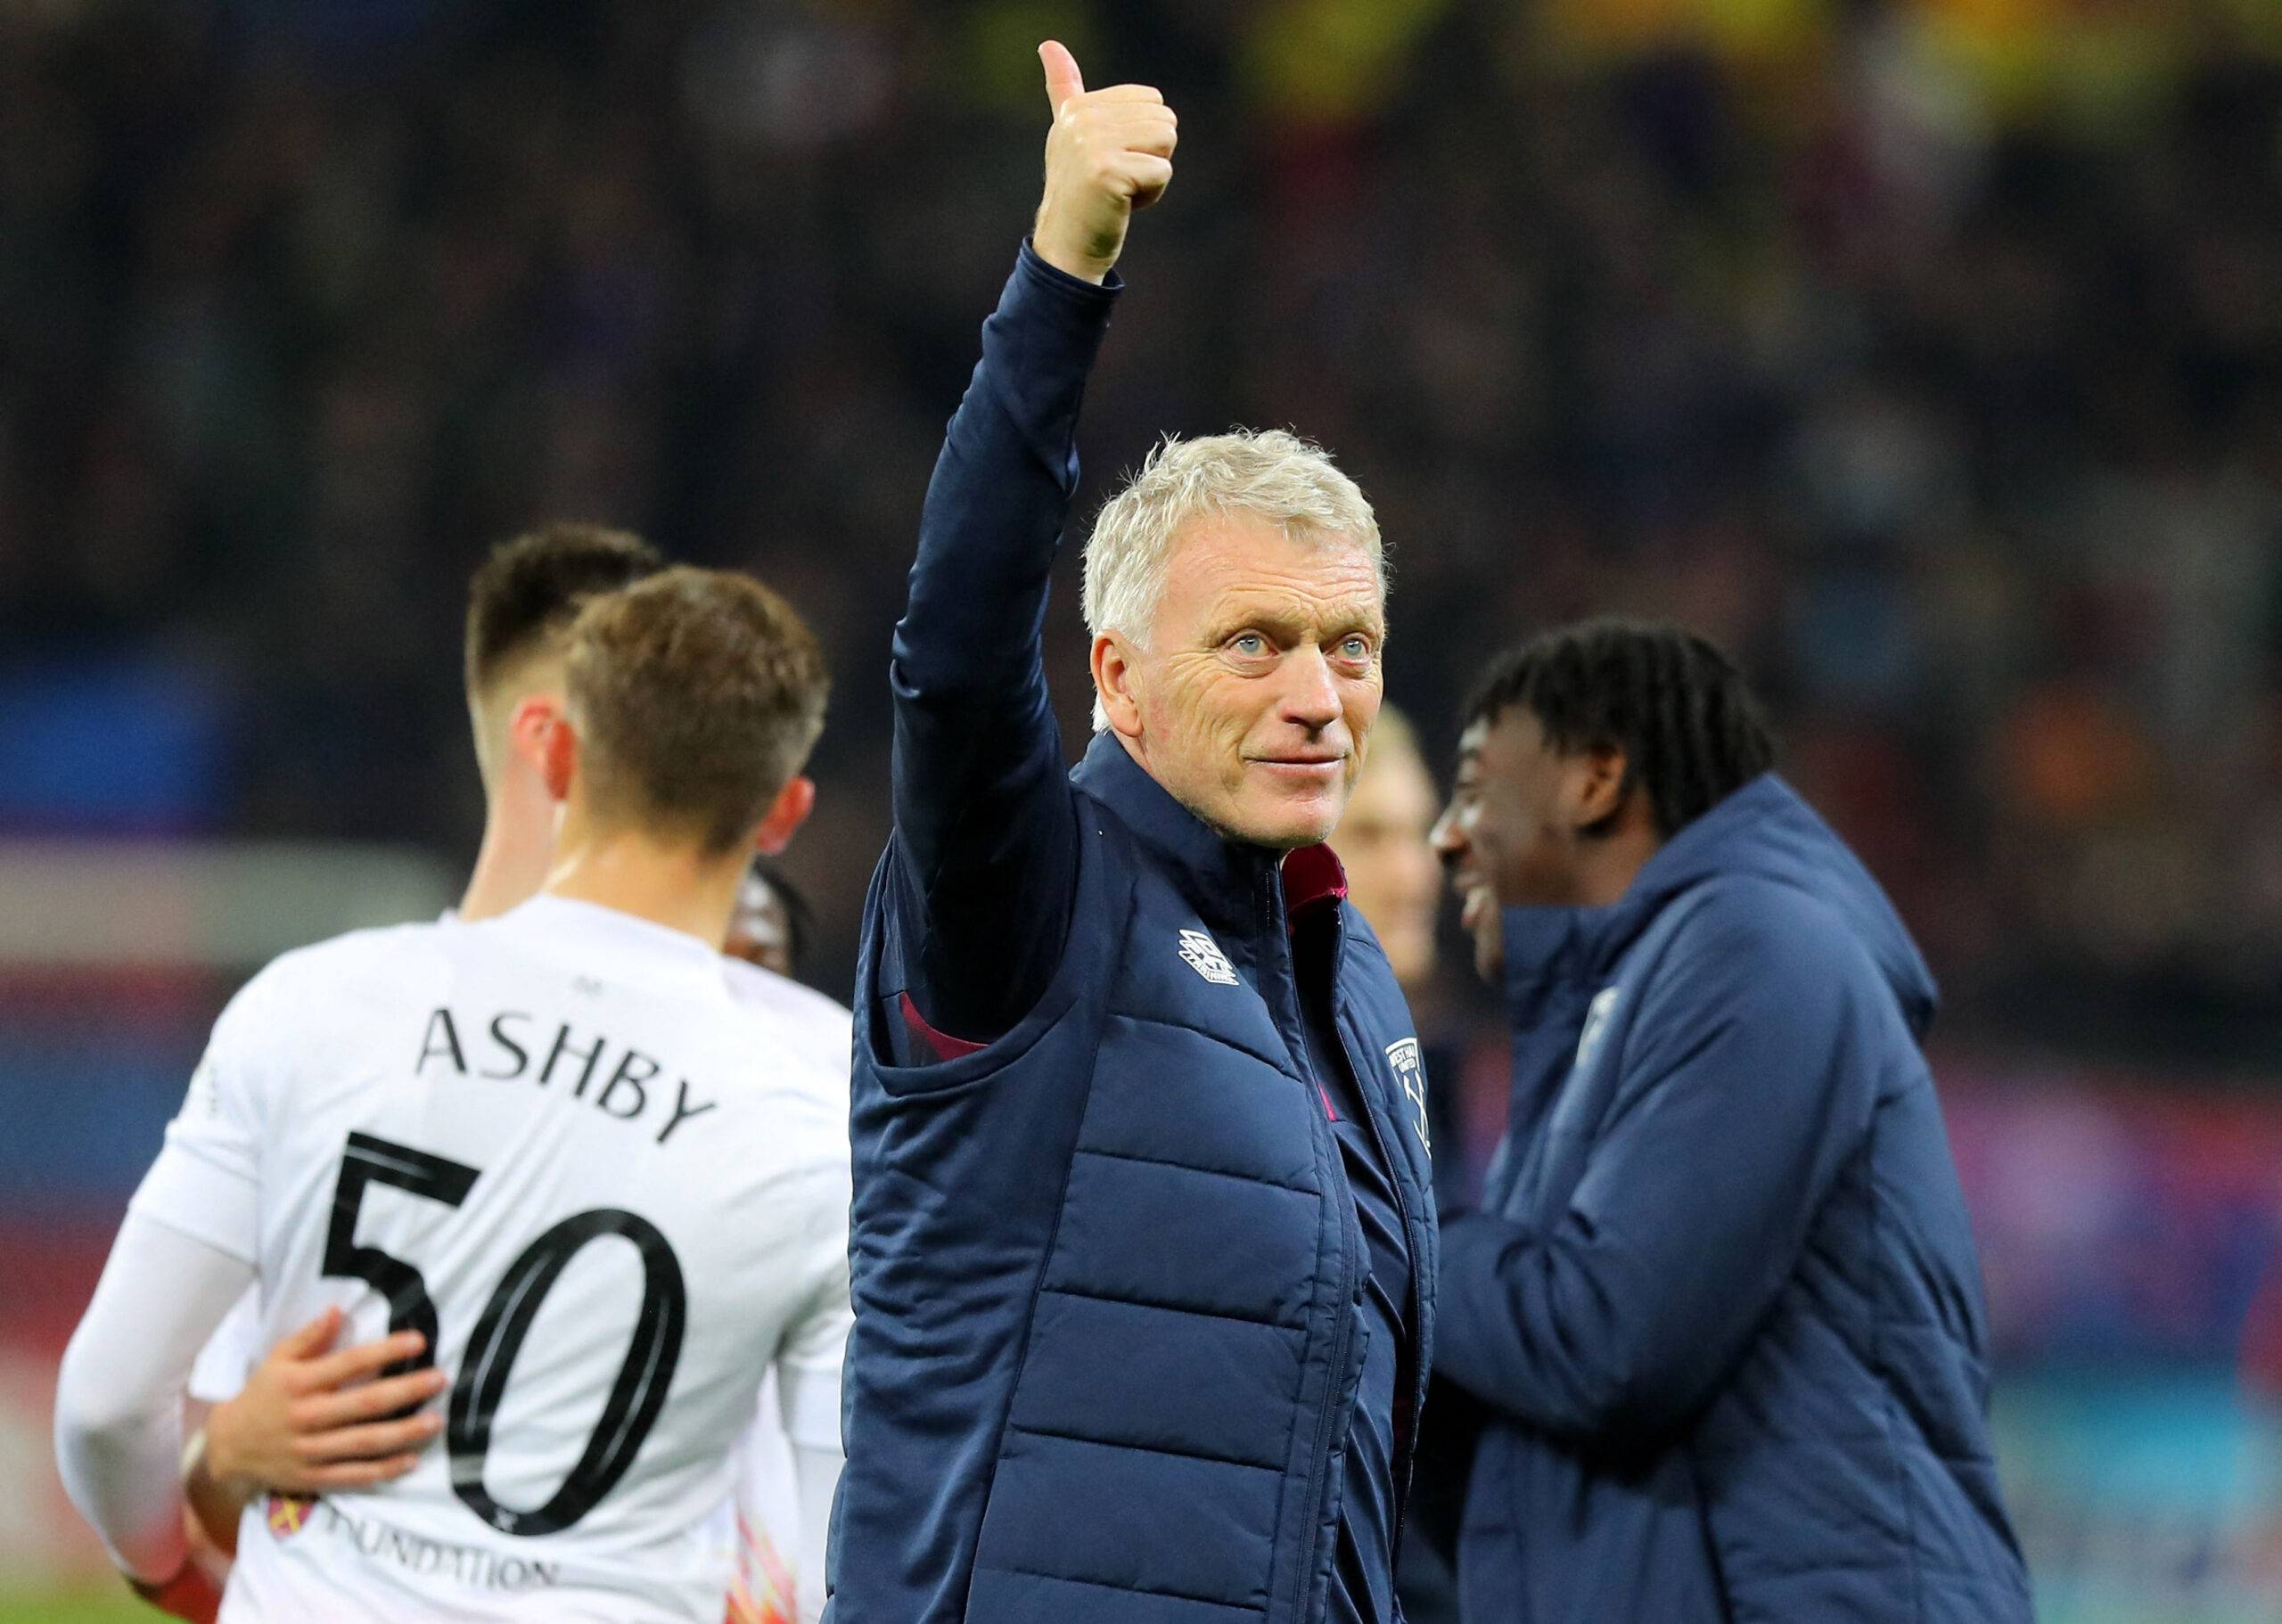 West Ham United manager David Moyes celebrates after match